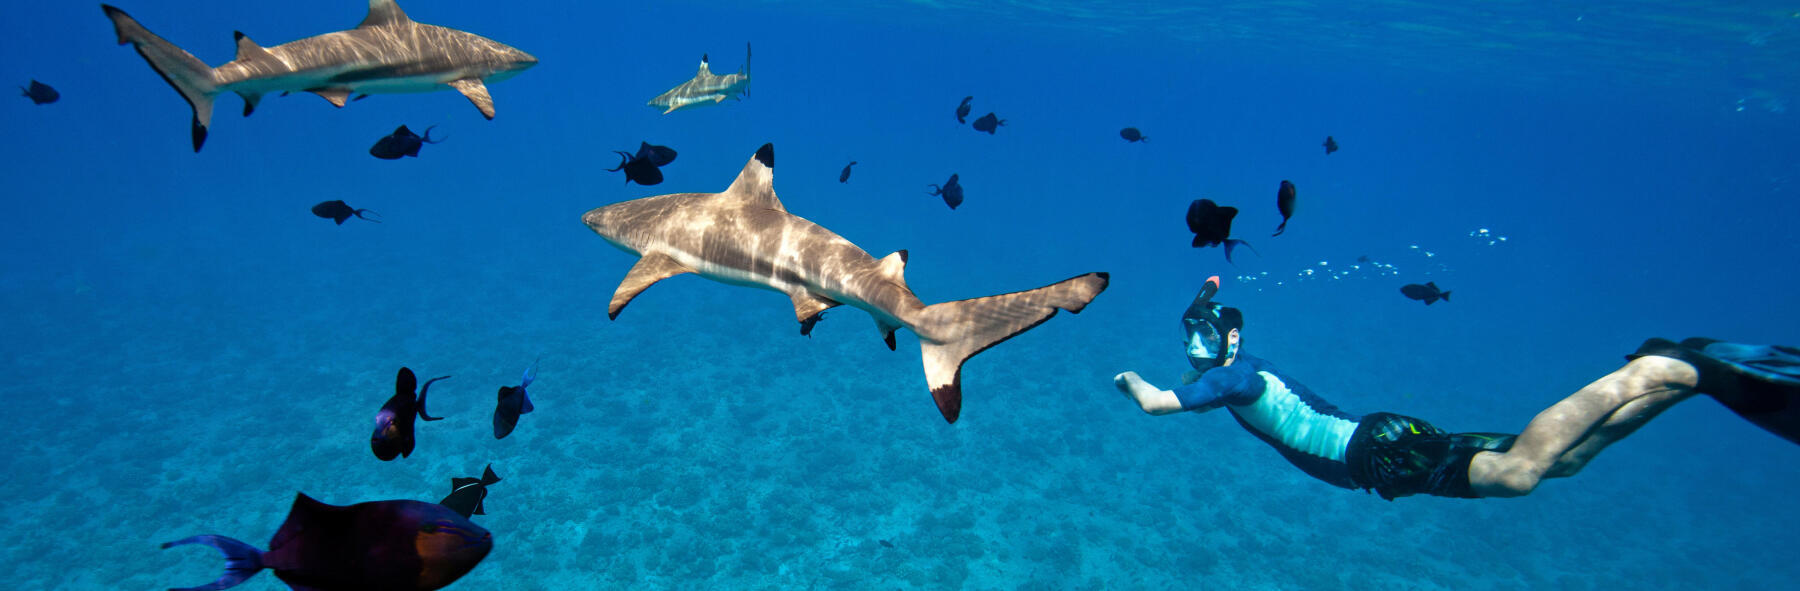 Photo plongée avec requins à pointes noires